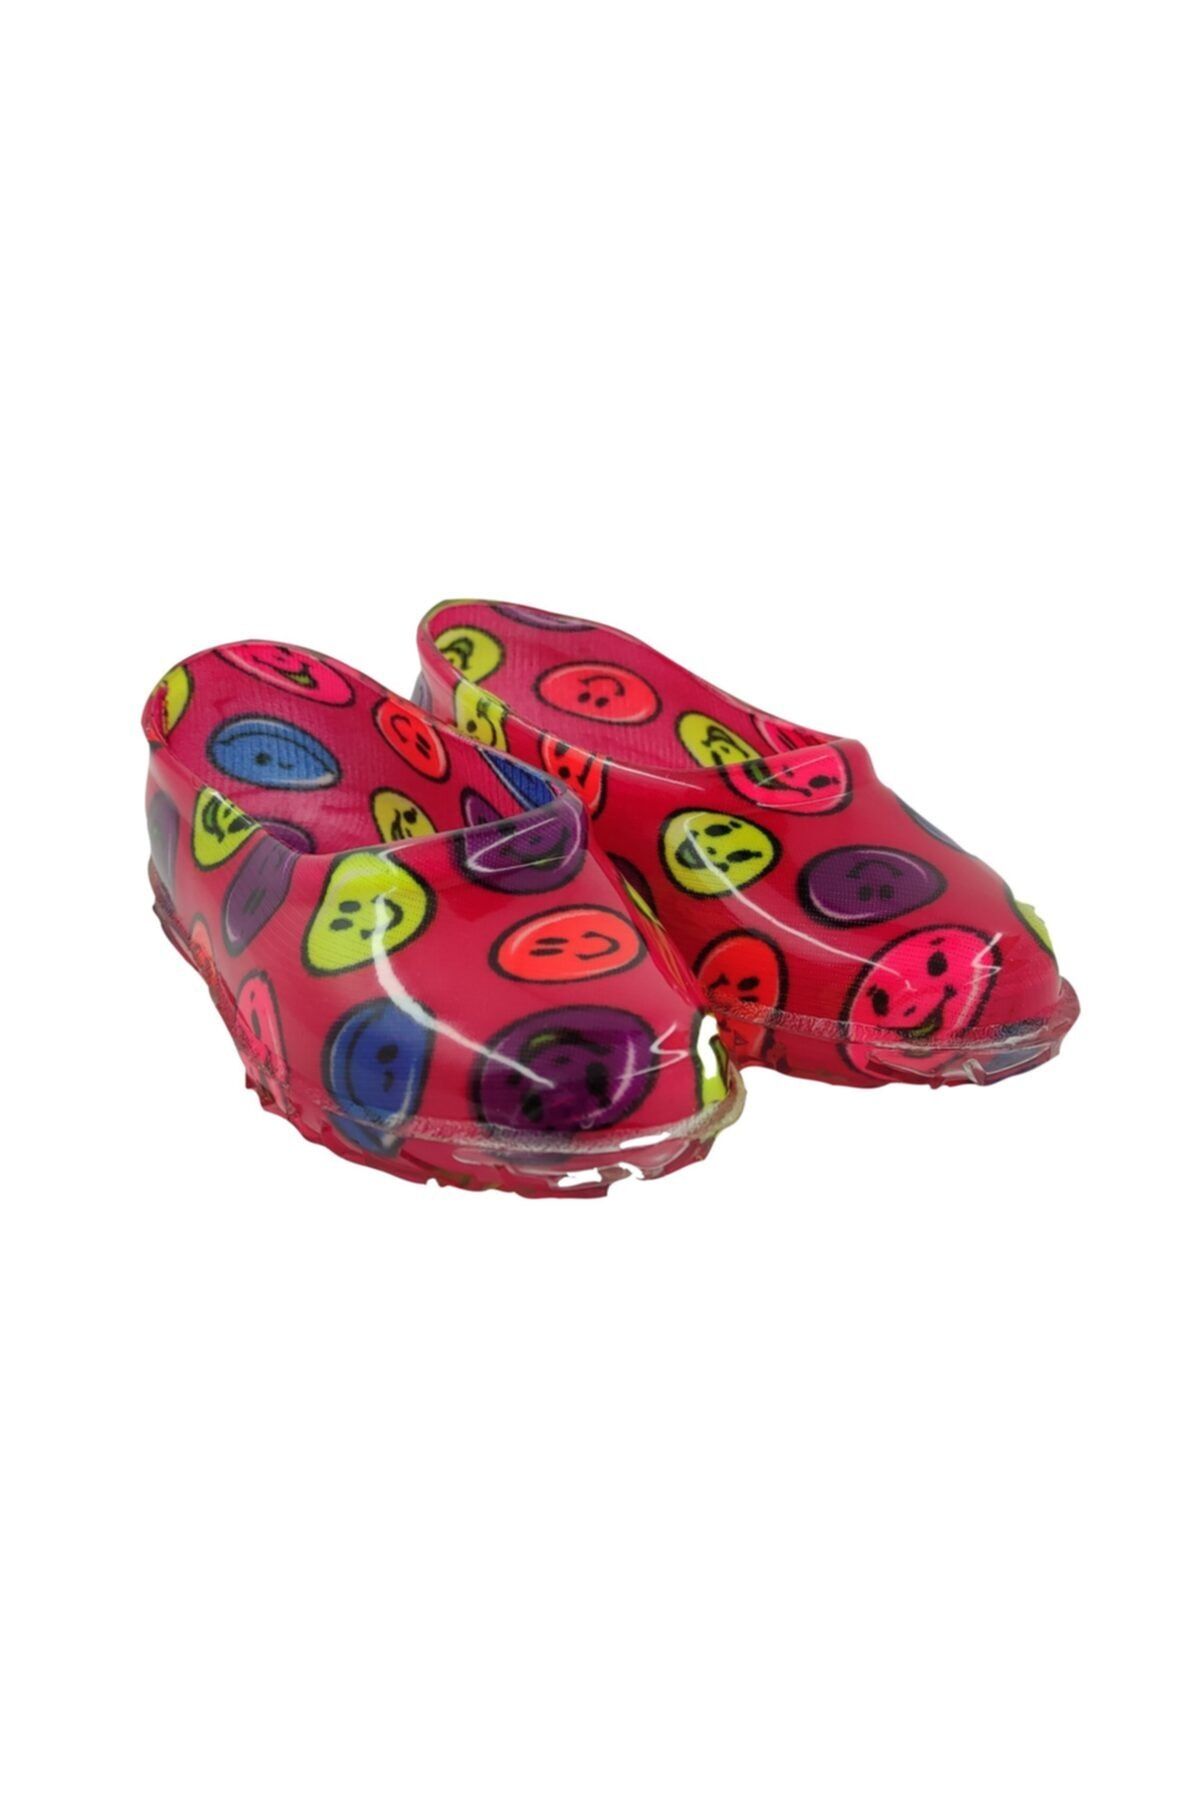 fafatara Pembe Renkli Emoji Desenli Çoçuk Lastik Ayakkabı